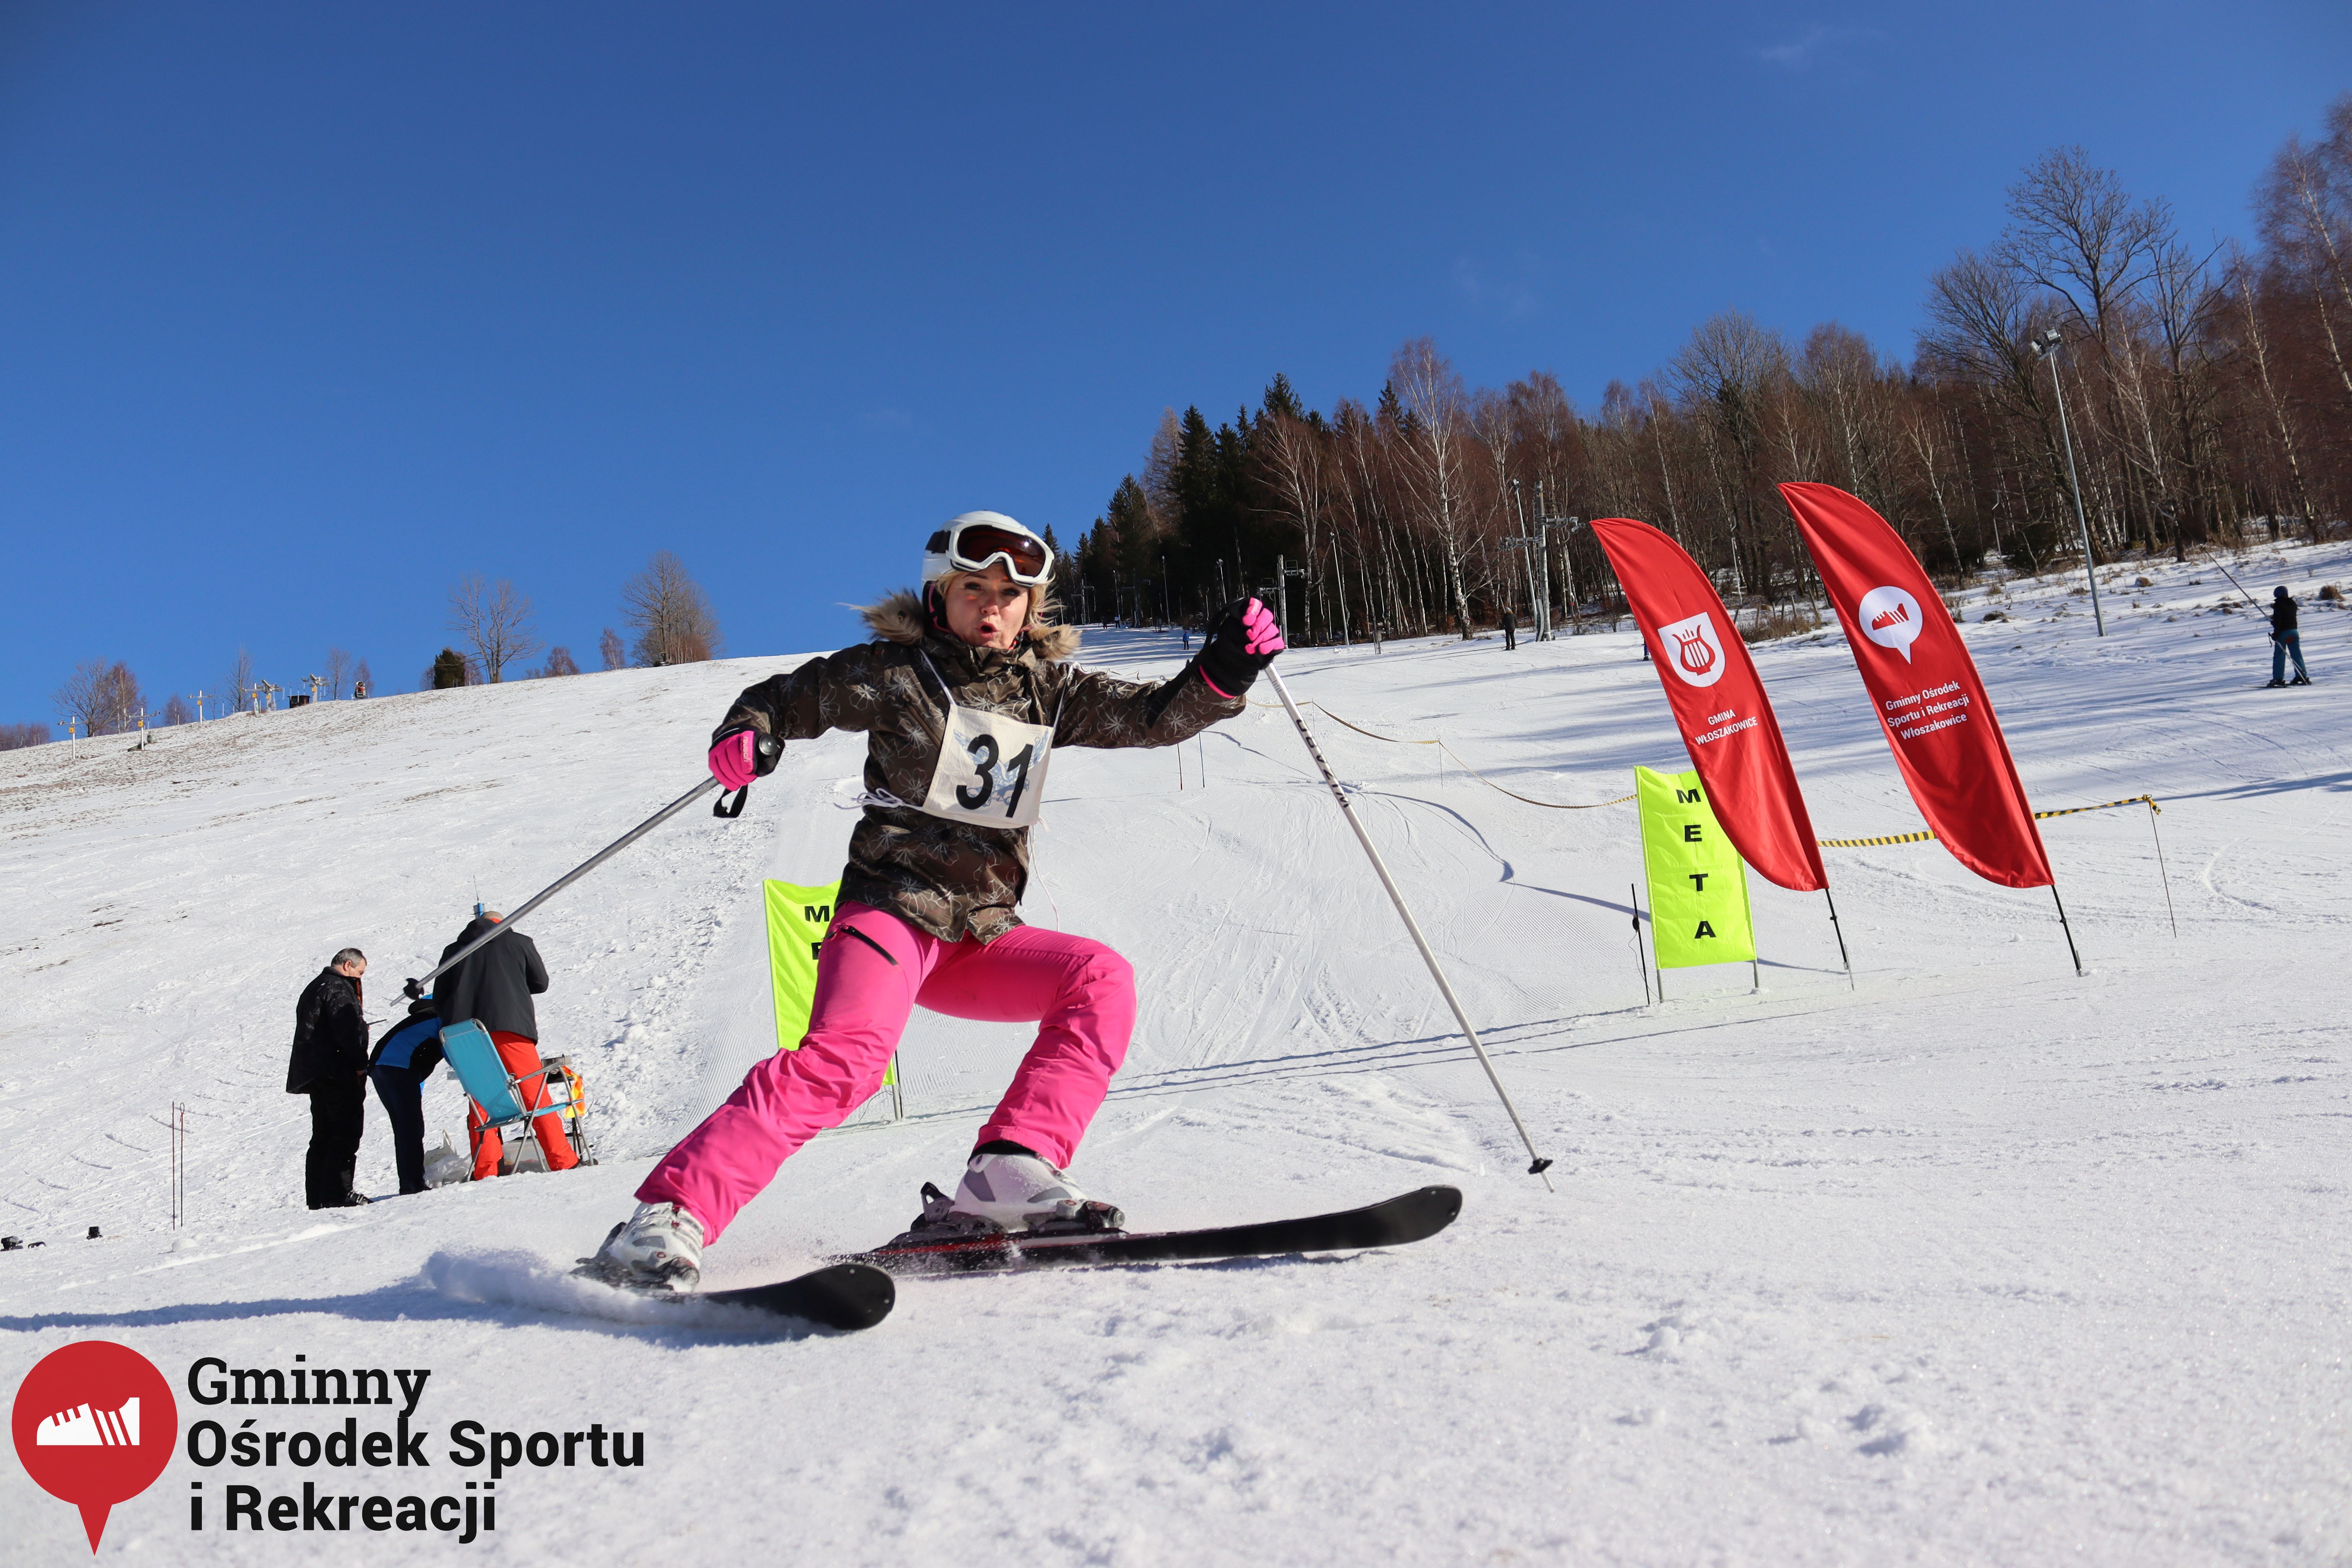 2022.02.12 - 18. Mistrzostwa Gminy Woszakowice w narciarstwie100.jpg - 2,37 MB